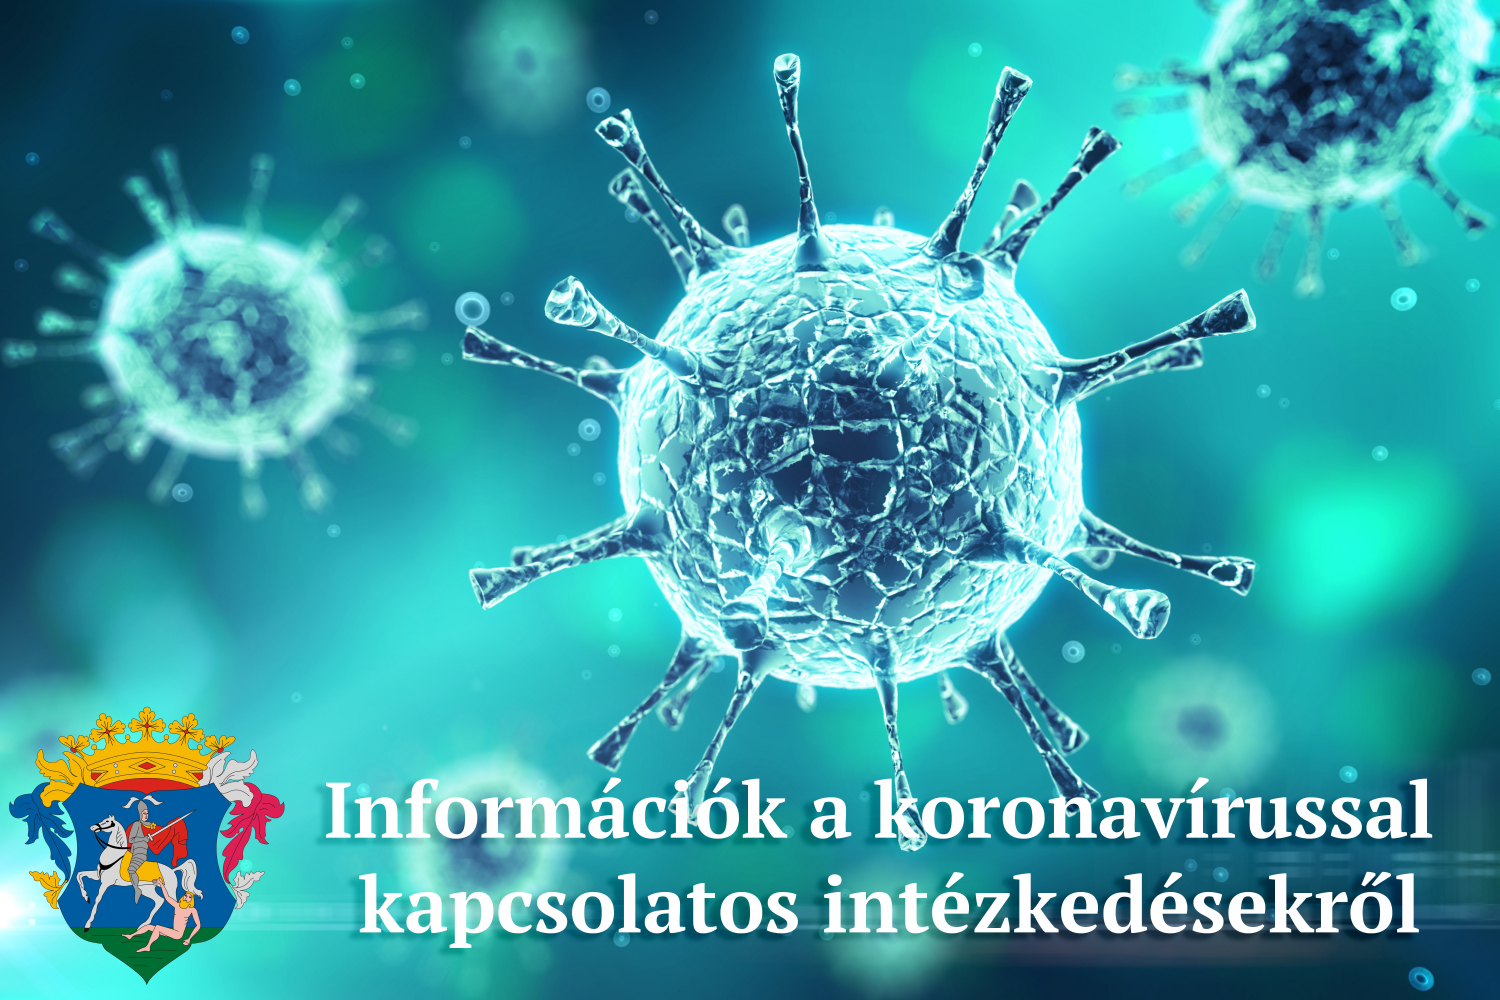 információk a koronavírussal kapcsolatos intézkedésekről, döntésekről 2020. november 11-12 között